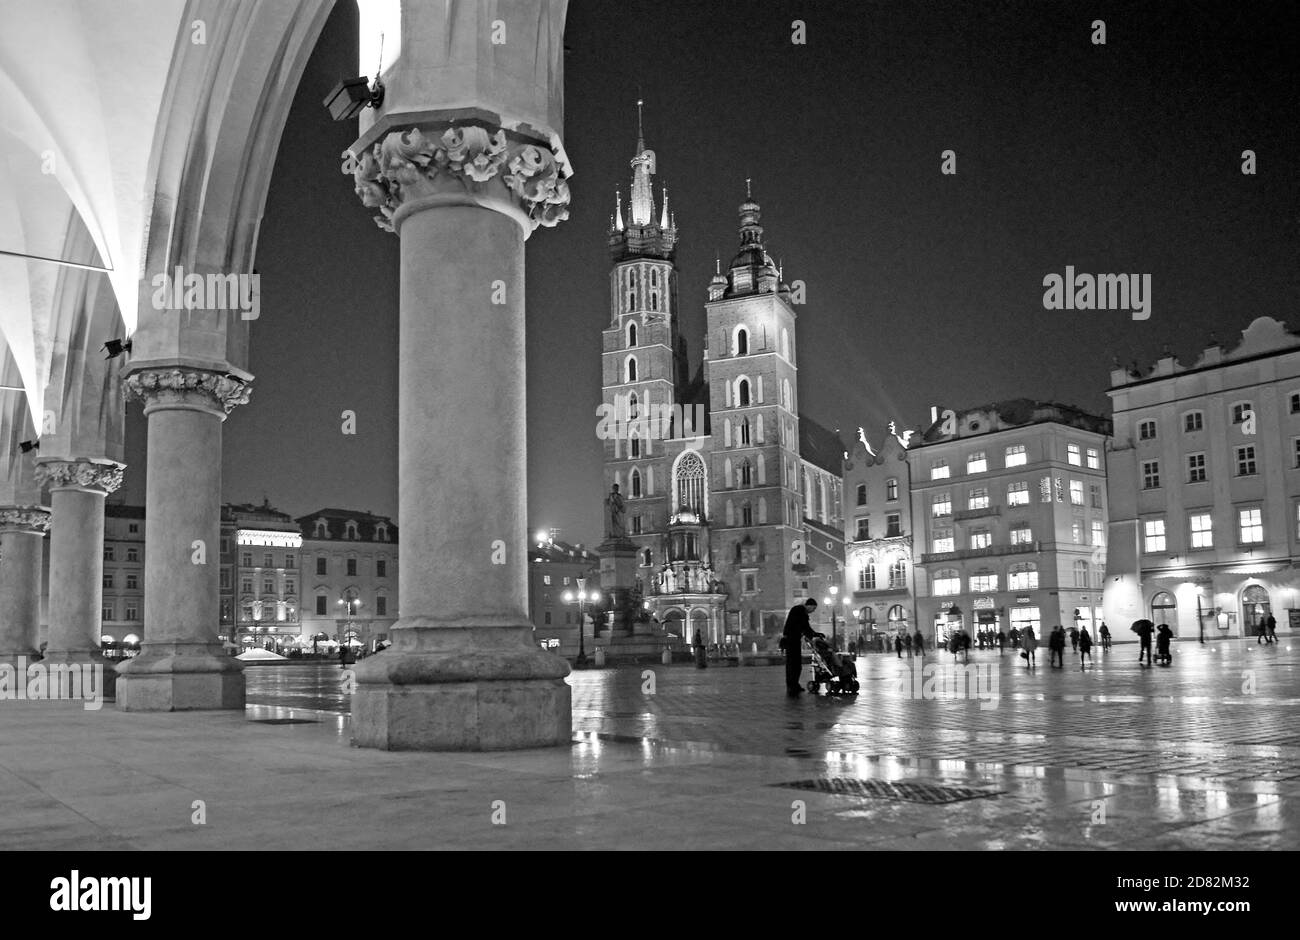 De la salle des tissus, une nuit de pluie sur la place principale du XIIIe siècle à Cracovie, en Pologne, on peut voir les tours gothiques de la basilique Sainte Marie sont illuminées. Banque D'Images